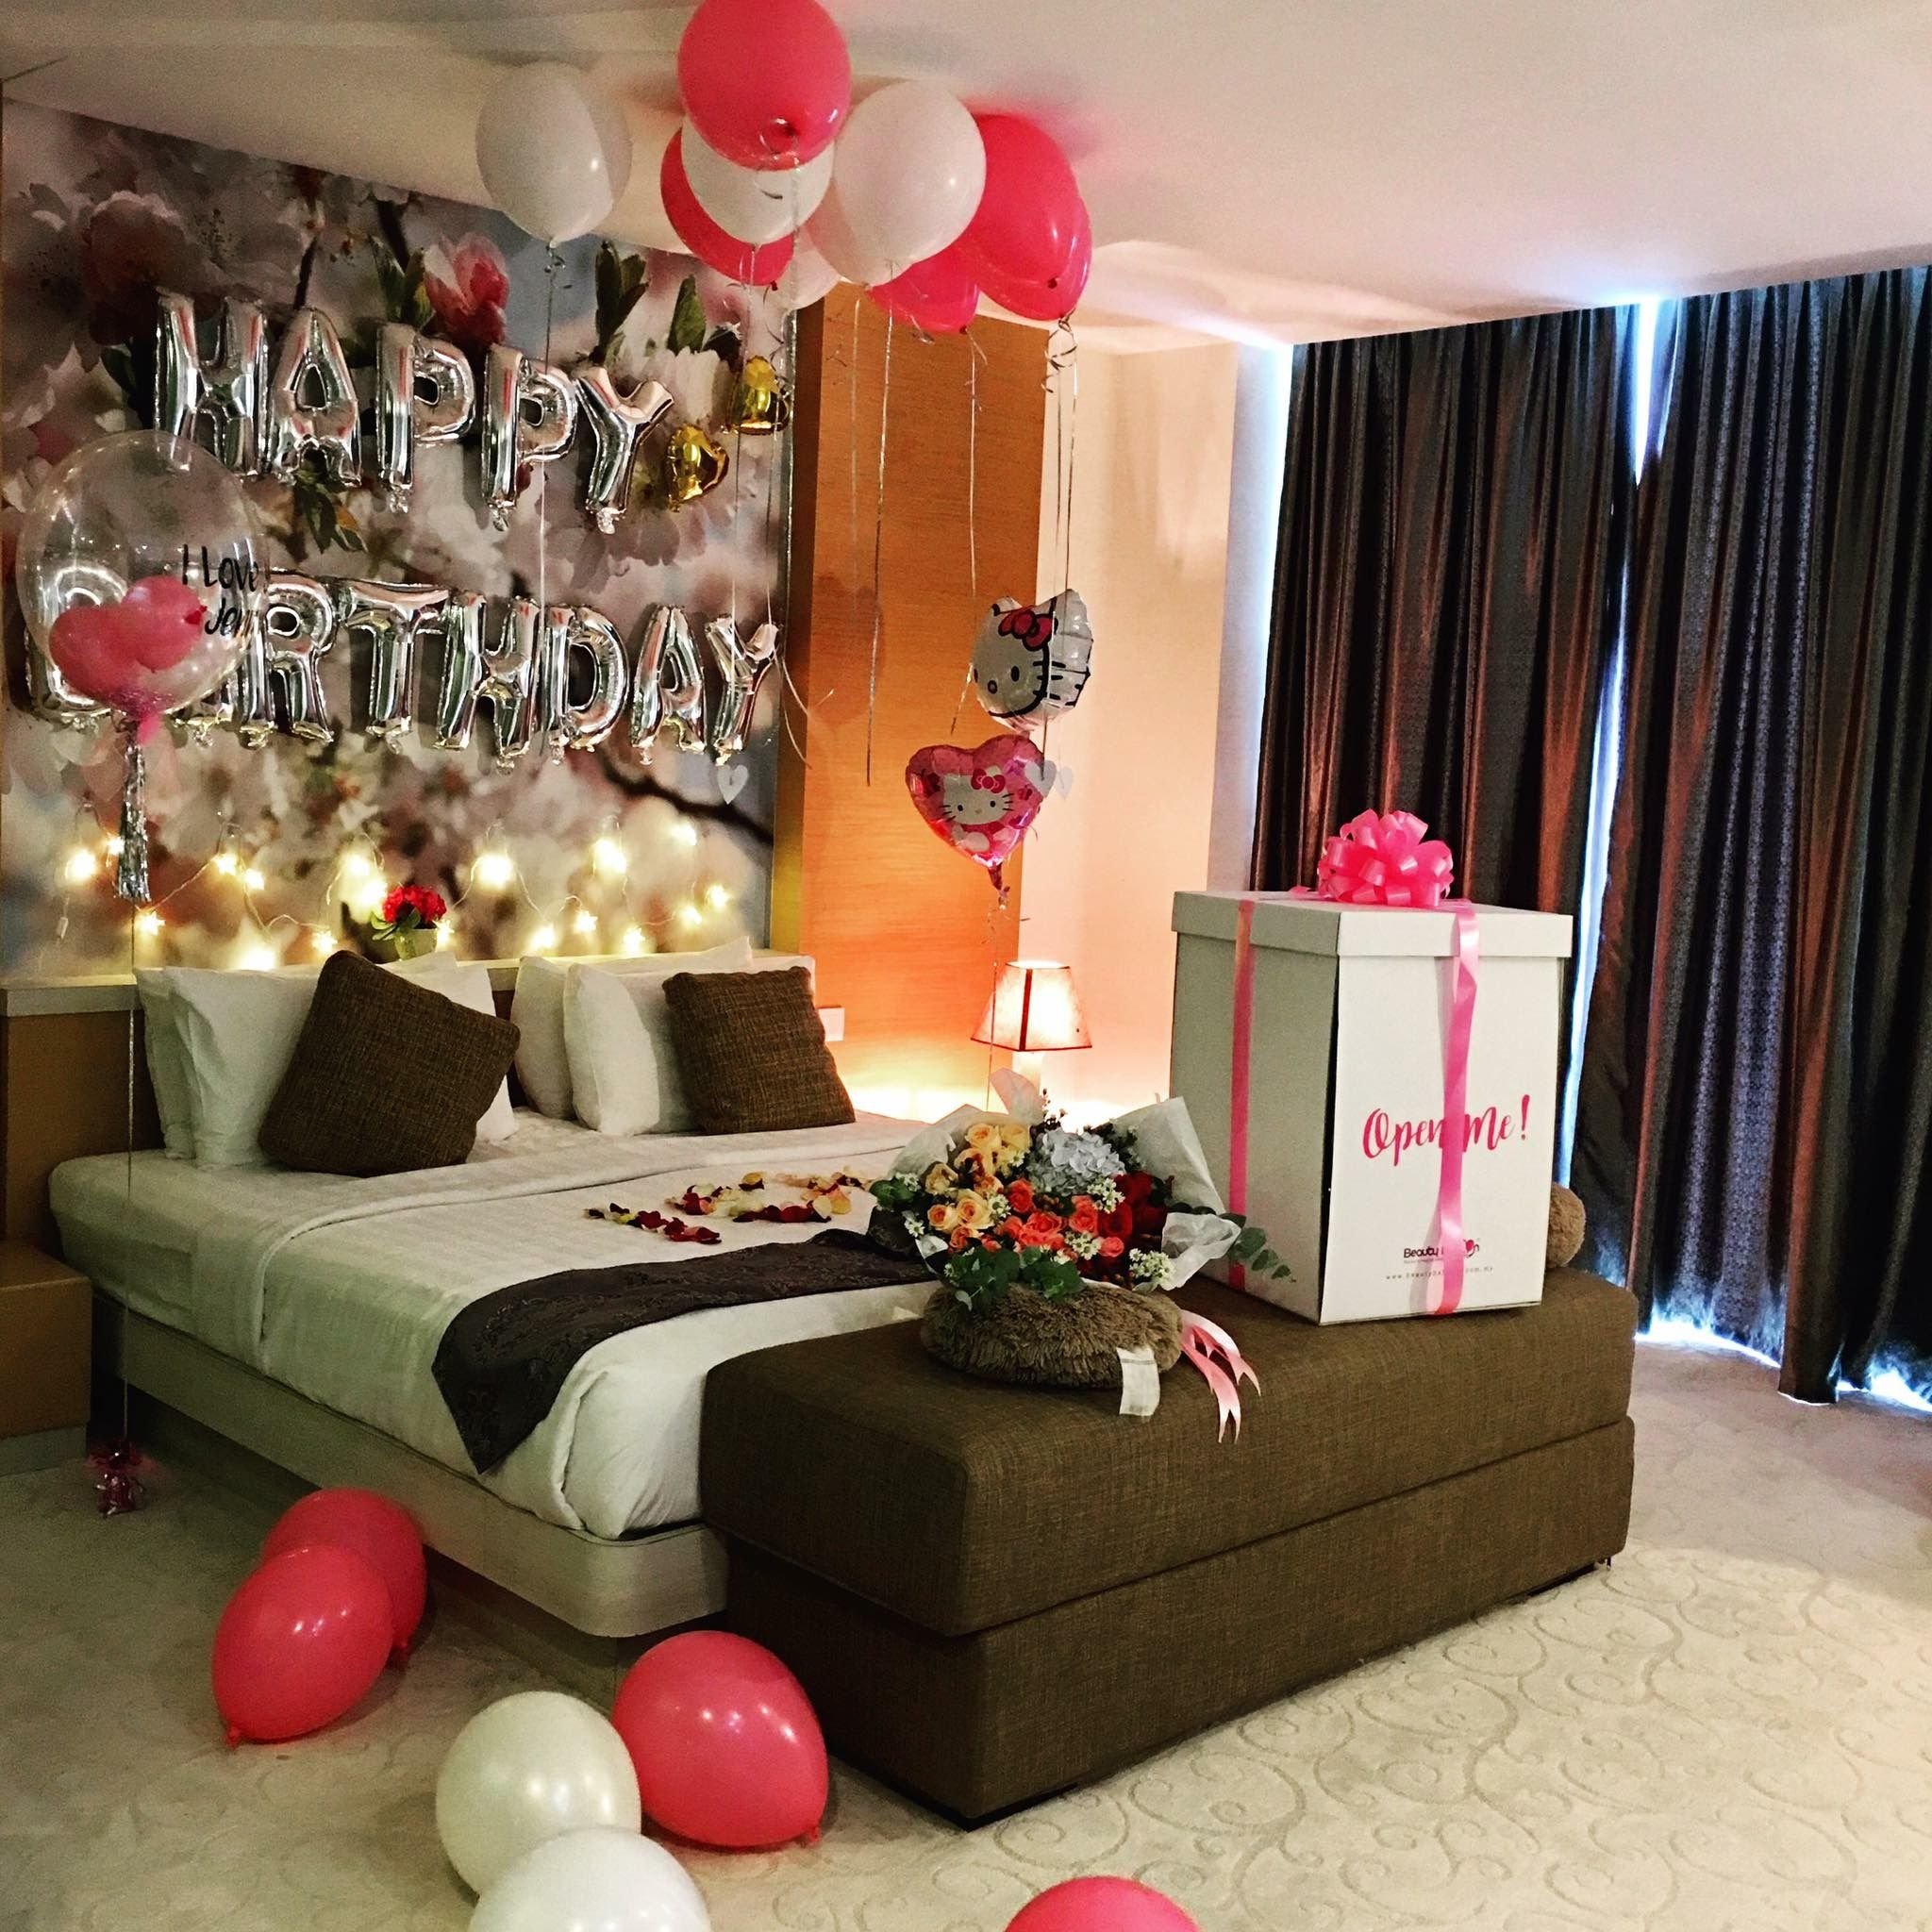 украсить комнату в день рождения мужа